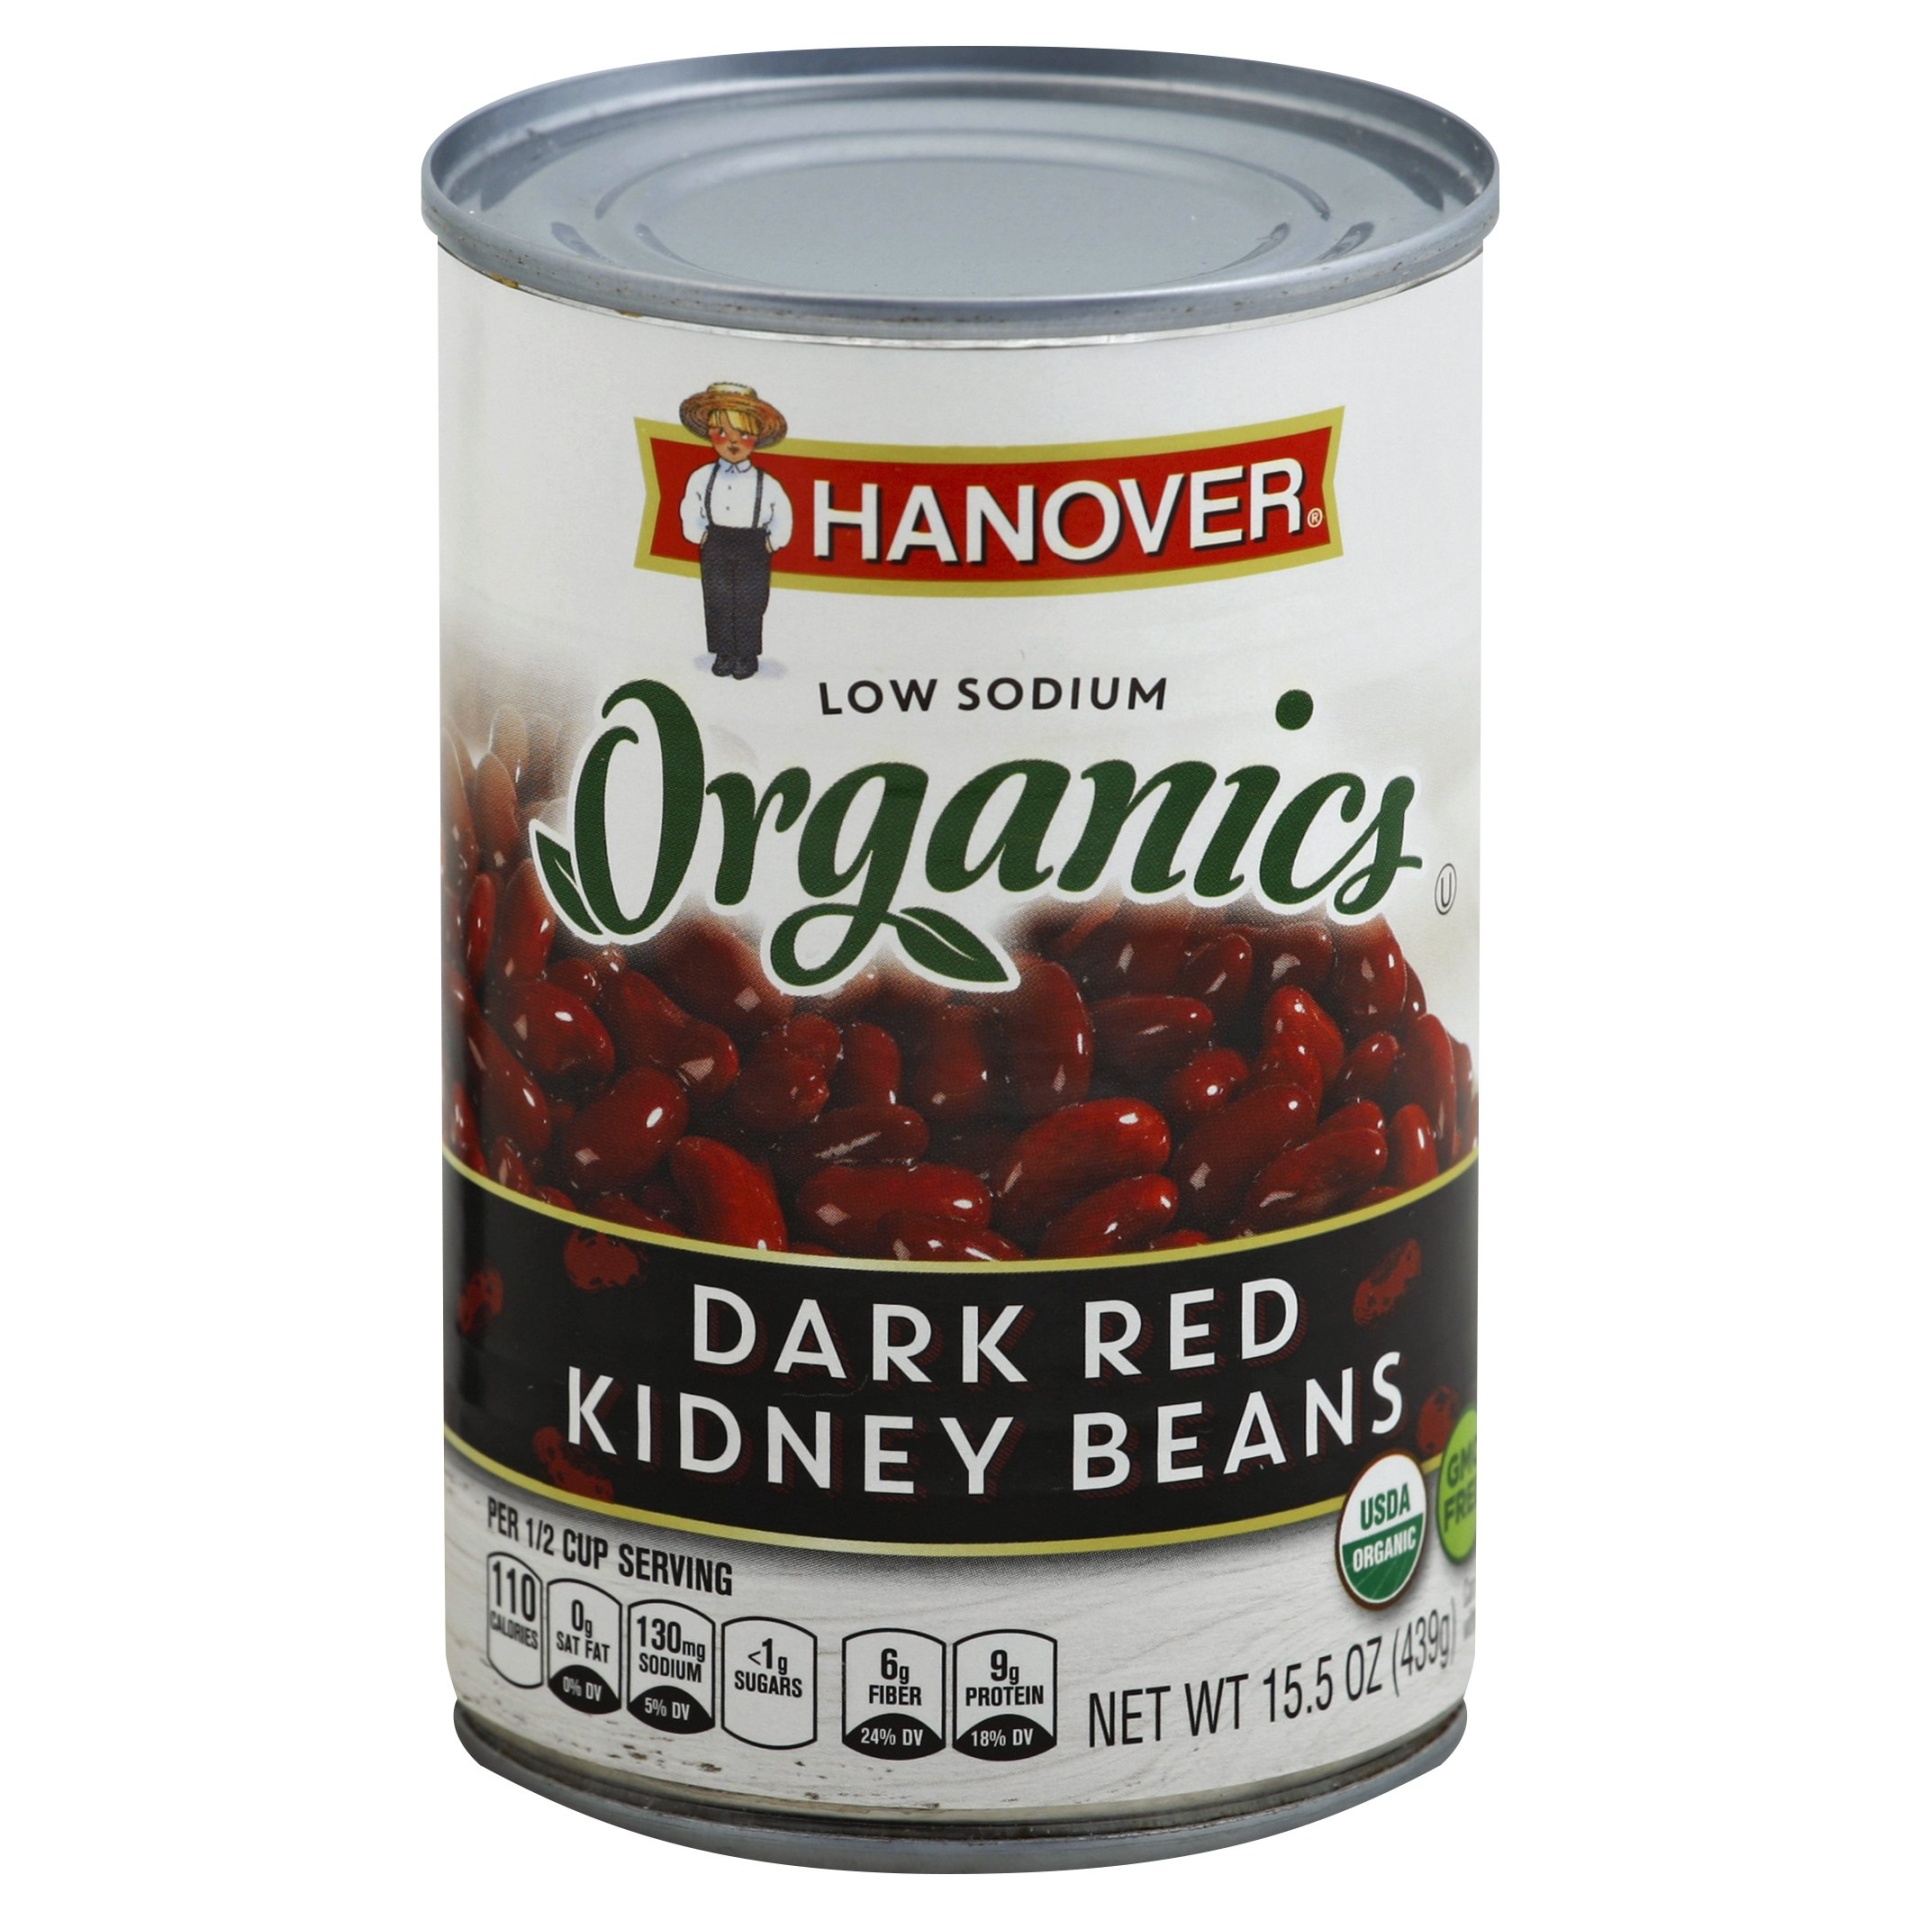 slide 1 of 2, Hanover Kidney Beans, Low Sodium, Dark Red, 15.5 oz